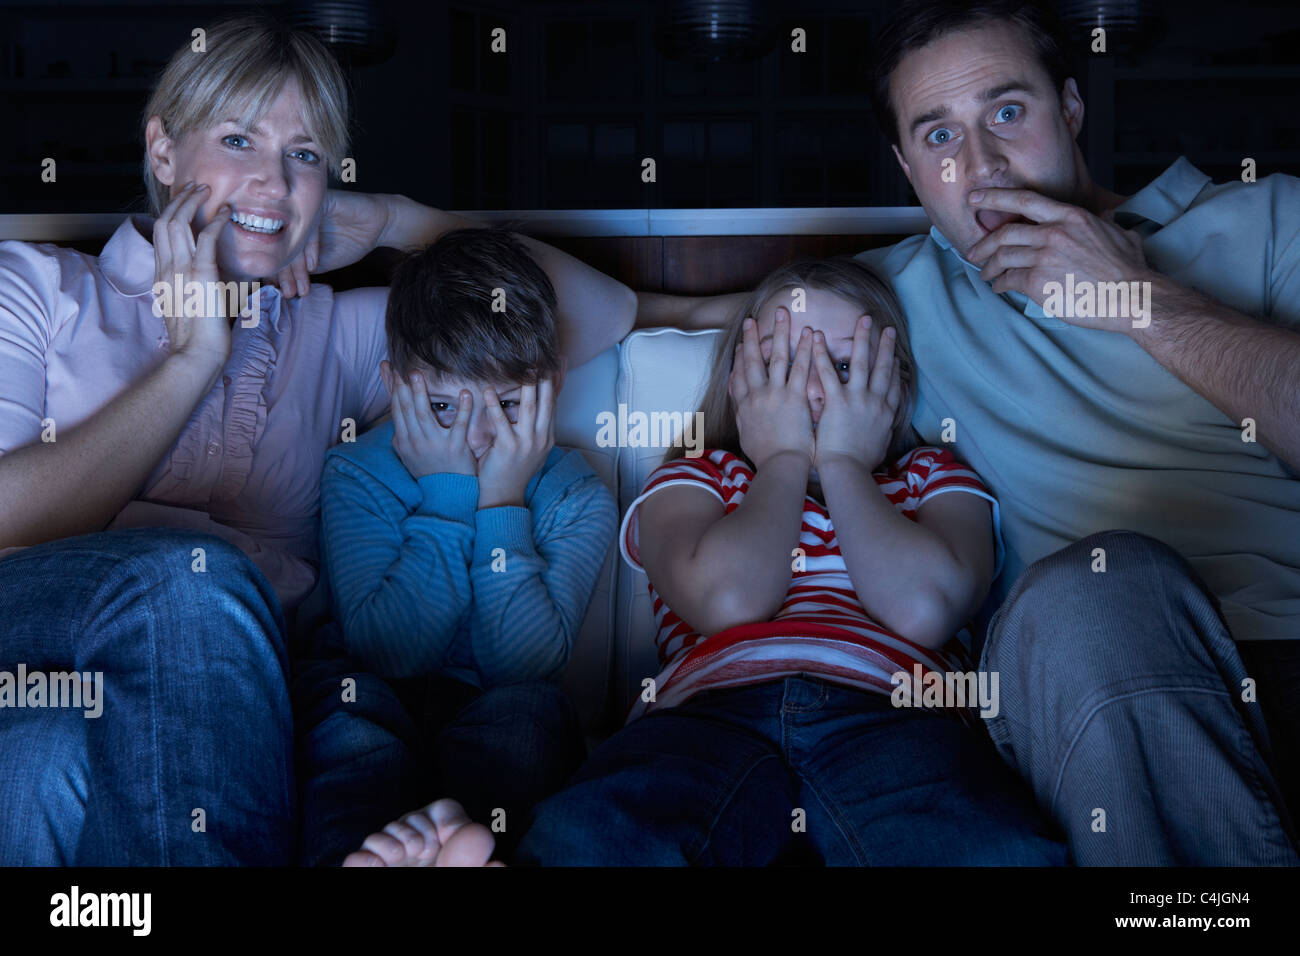 Familie vor dem beängstigend Programm im Fernsehen Zusammensitzen auf Sofa Stockfoto